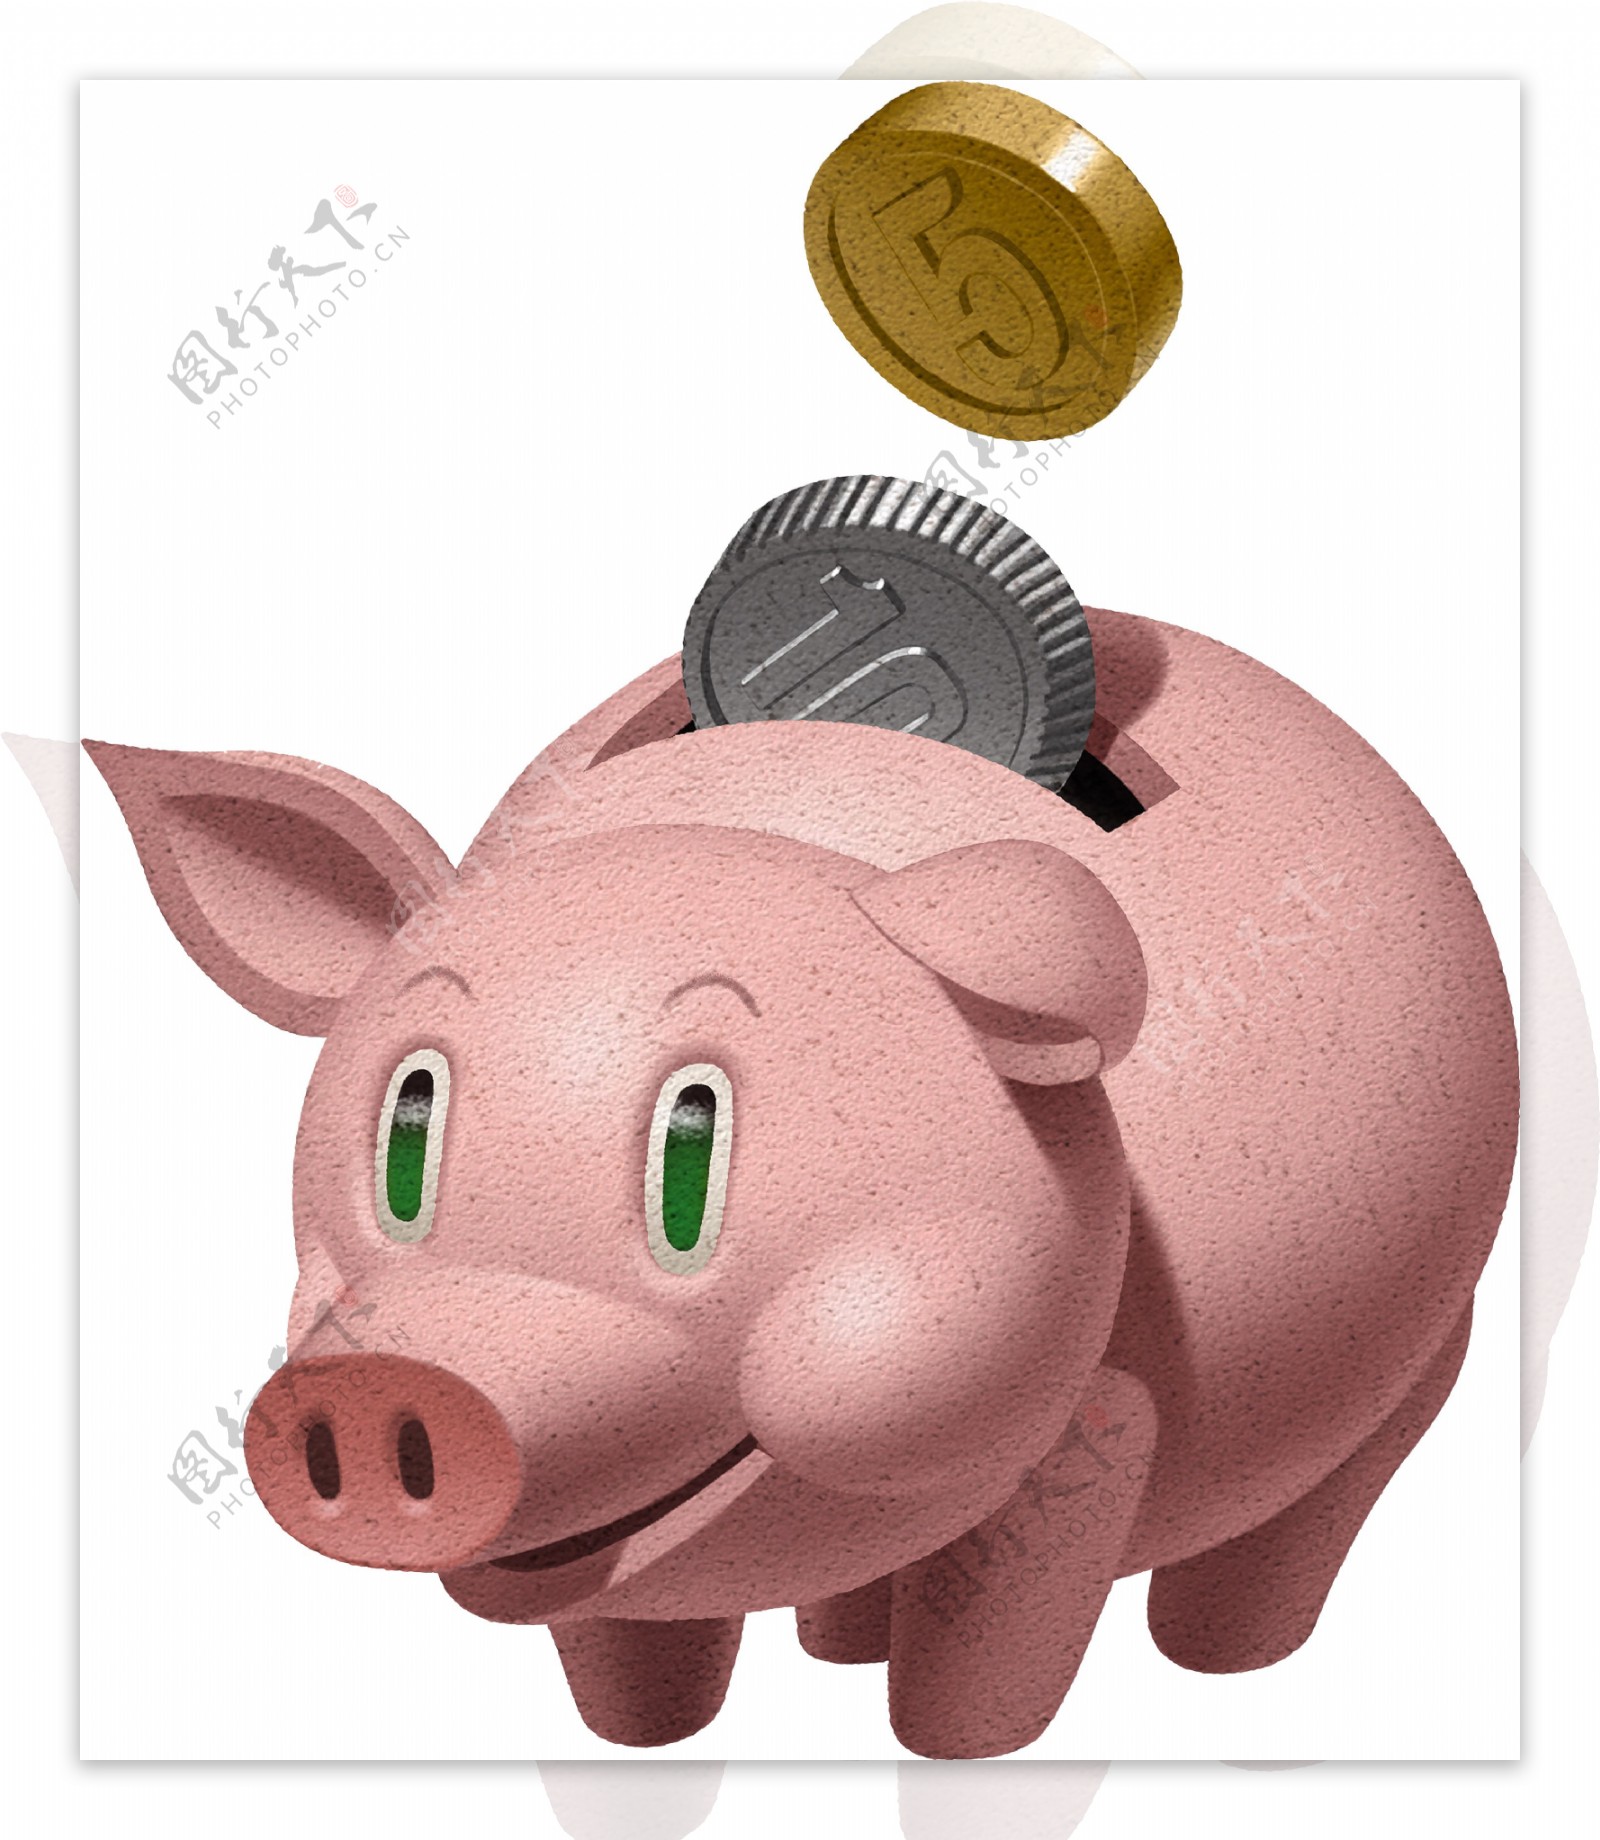 粉色存钱猪和金币图片